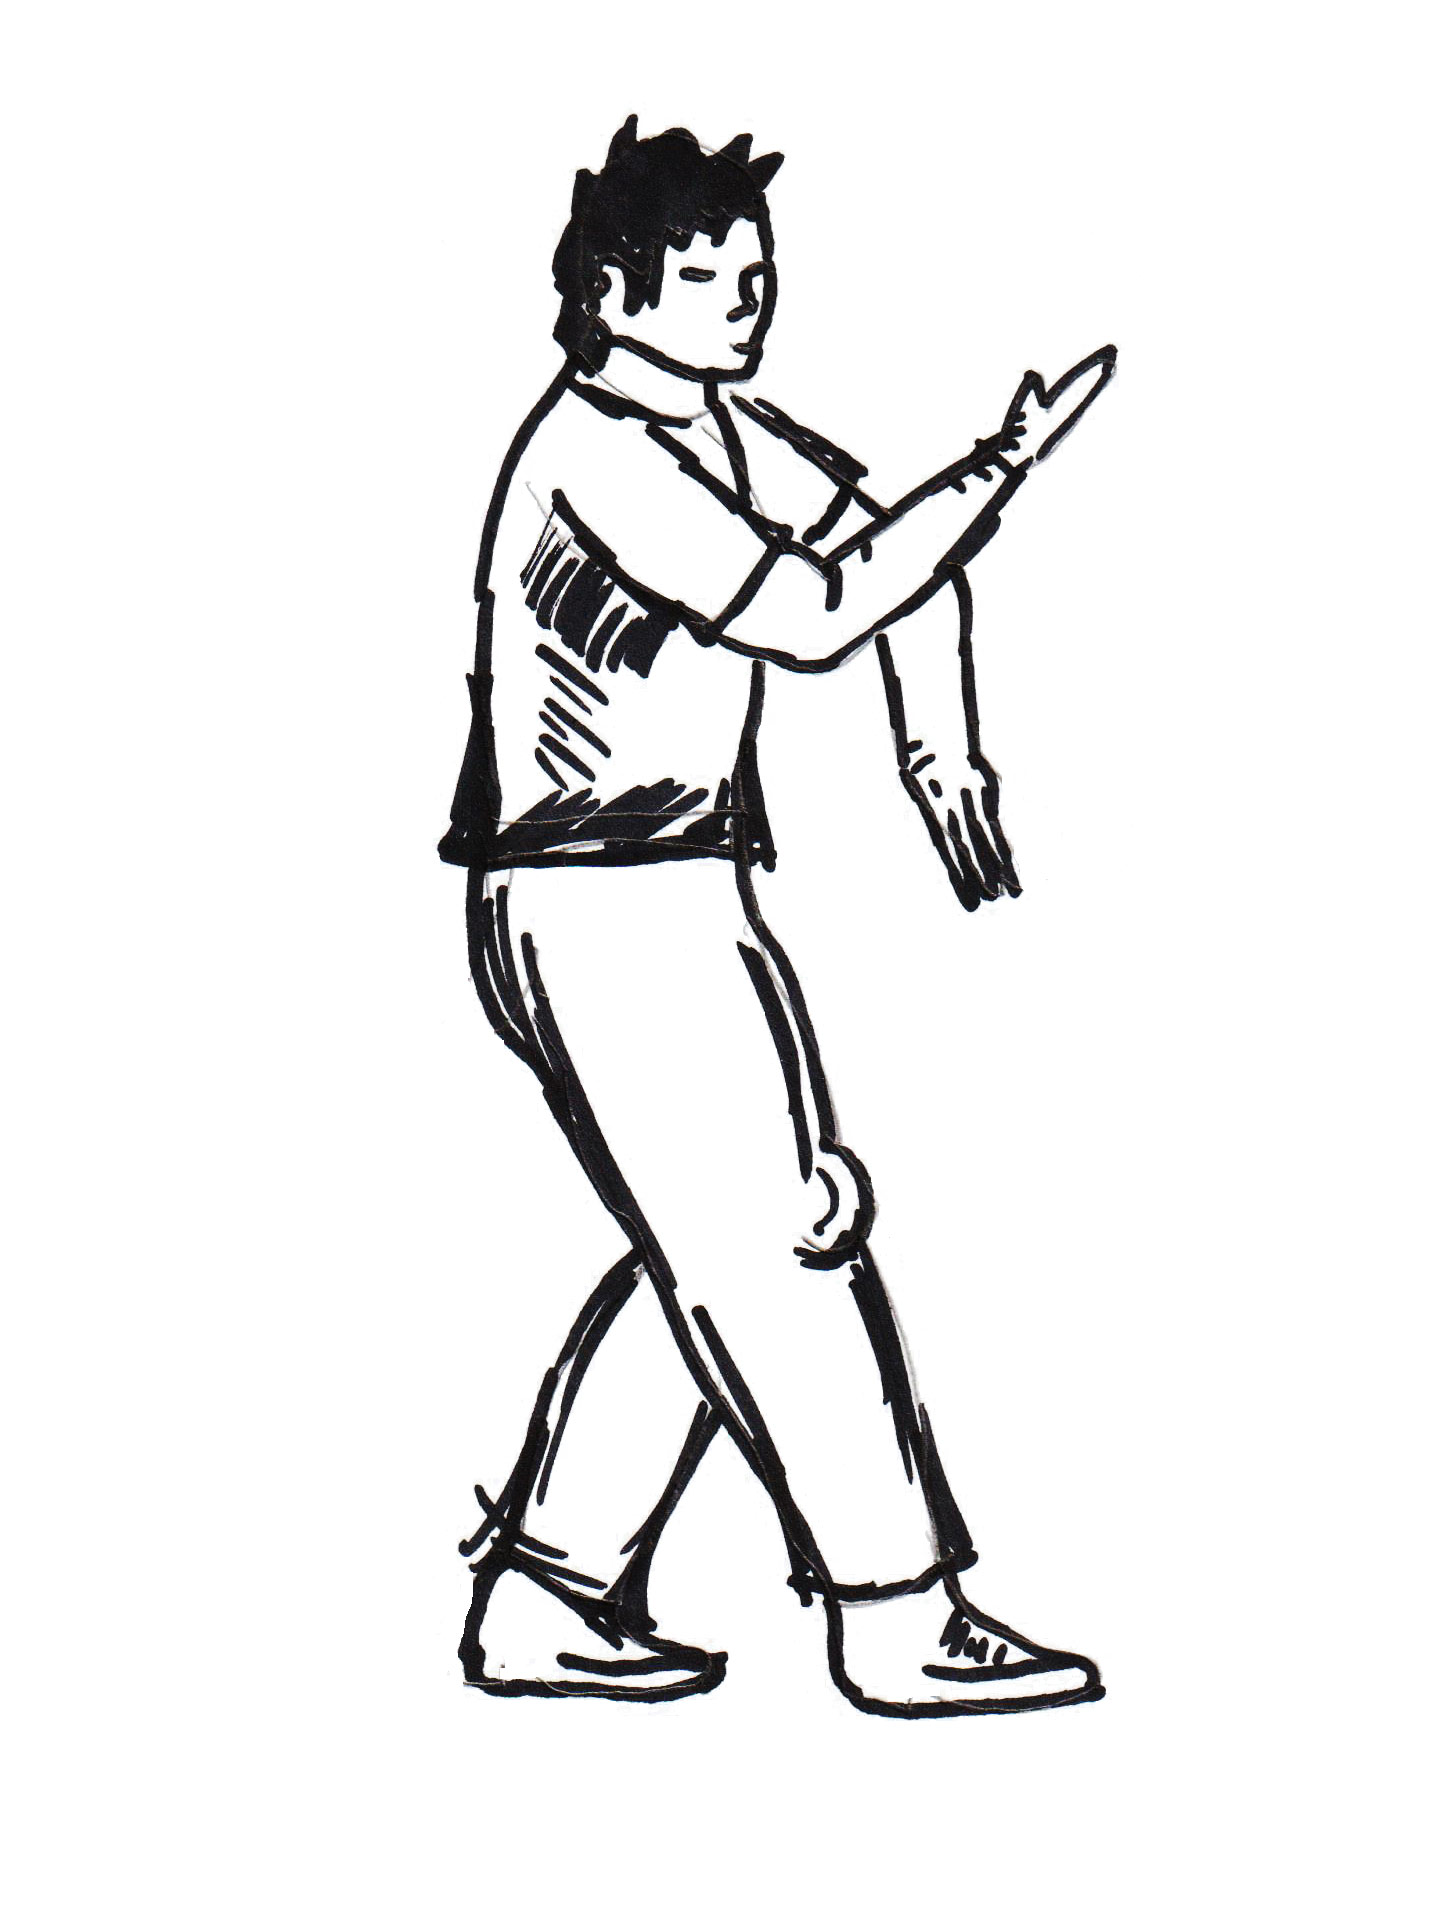 Chan Wah Shun war ein Lehrer von Yip Man im Wing Chun Kung Fu.